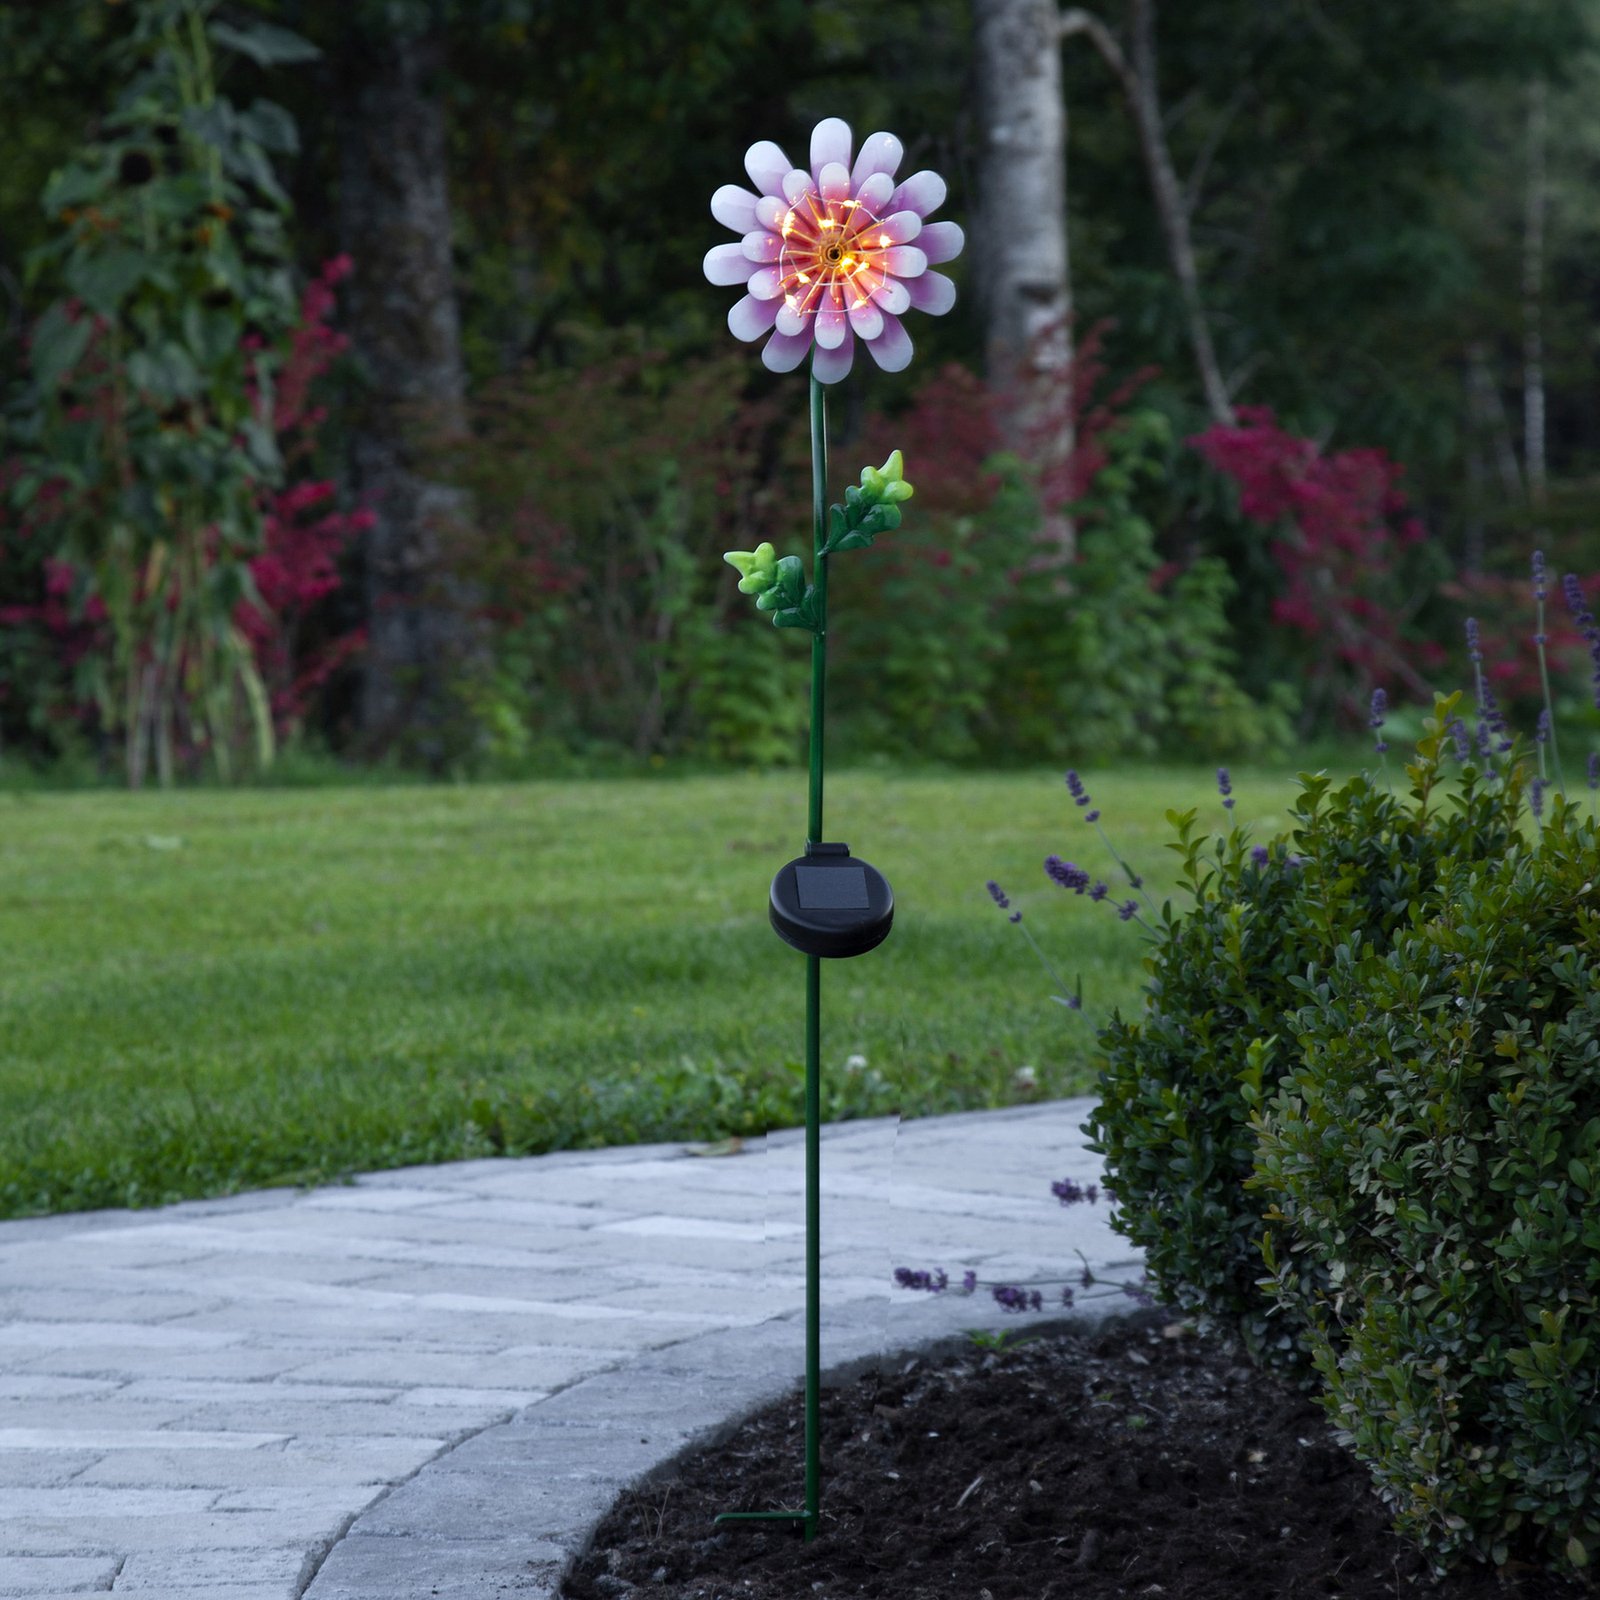 Solárne LED svietidlo Pink Daisy v tvare kvetiny